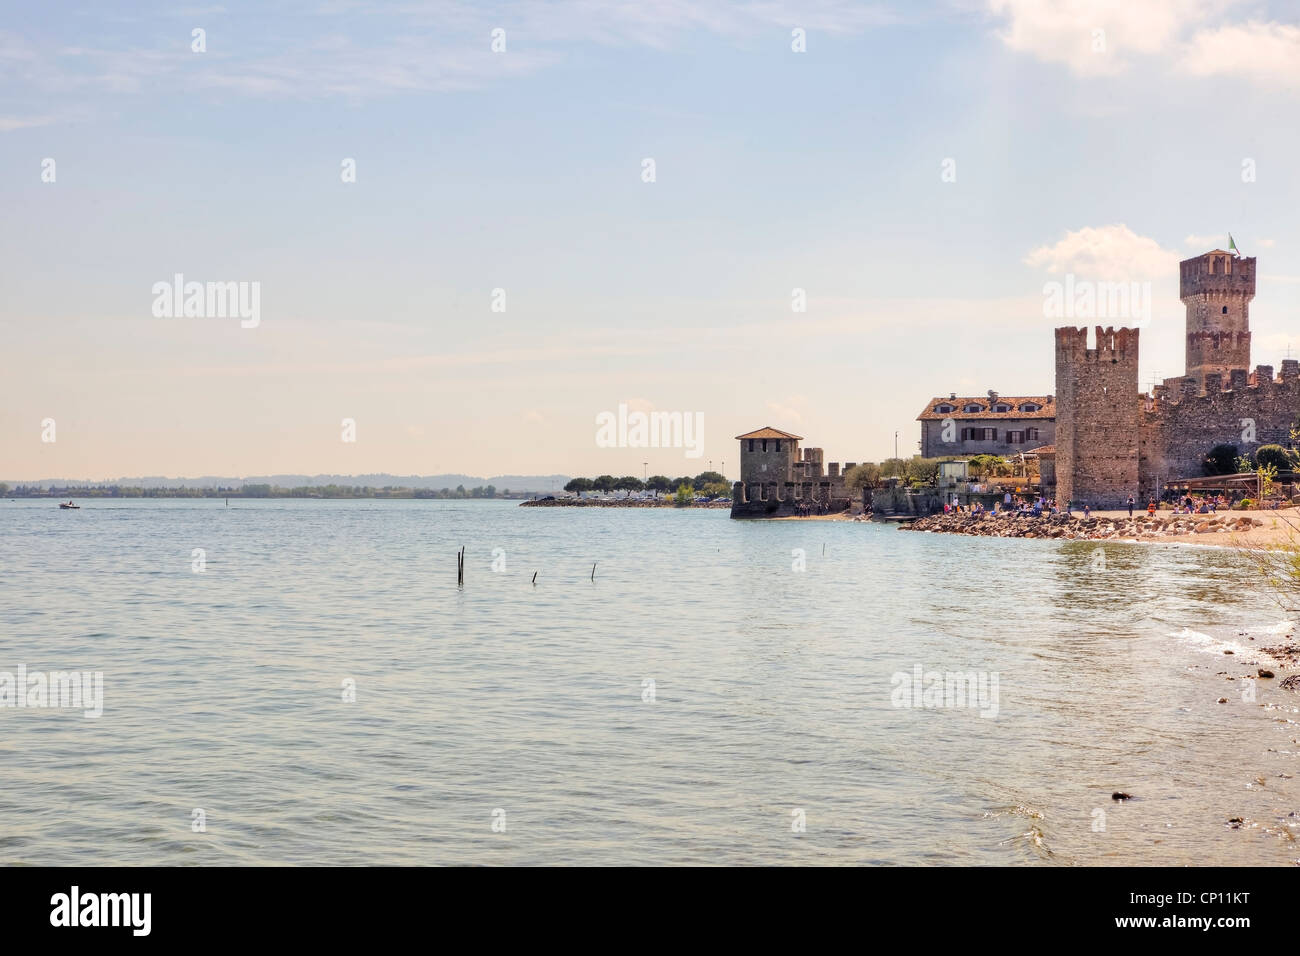 Spiaggia privata sul lago di Garda ai piedi del castello scaligero di Sirmione, Lombardia, Italia Foto Stock